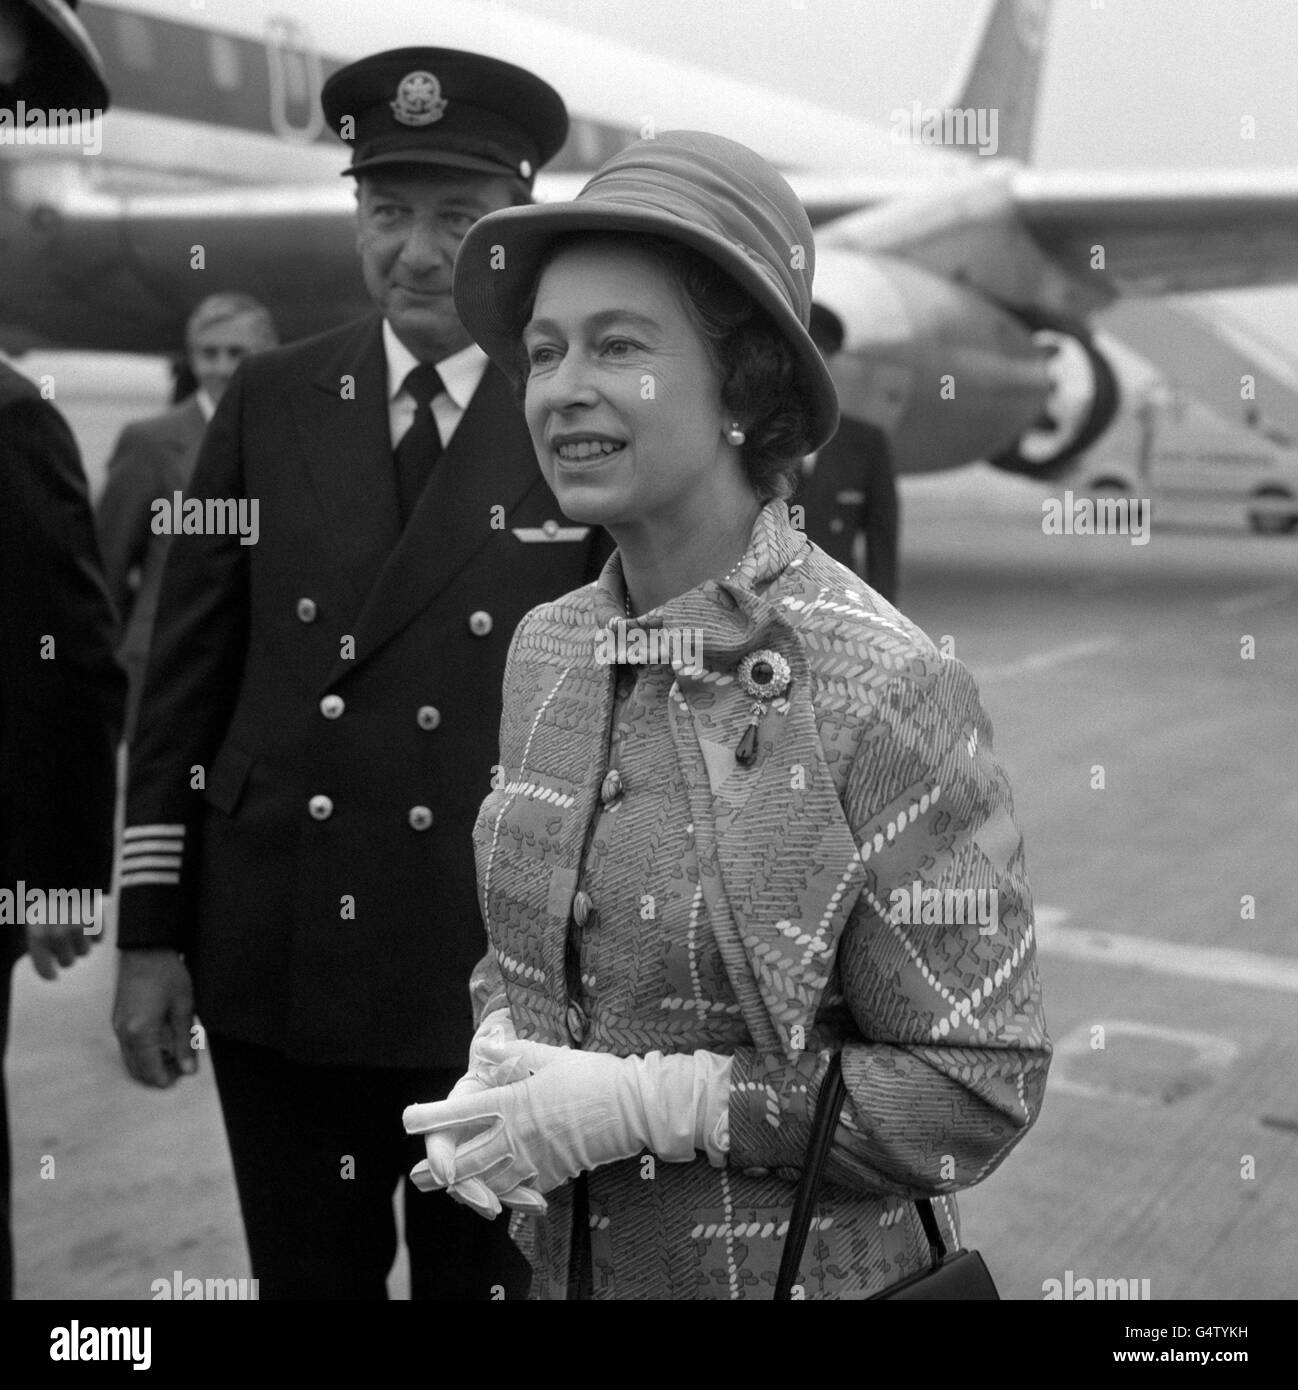 Royalty - Queen Elizabeth II - Heathrow Airport Stock Photo